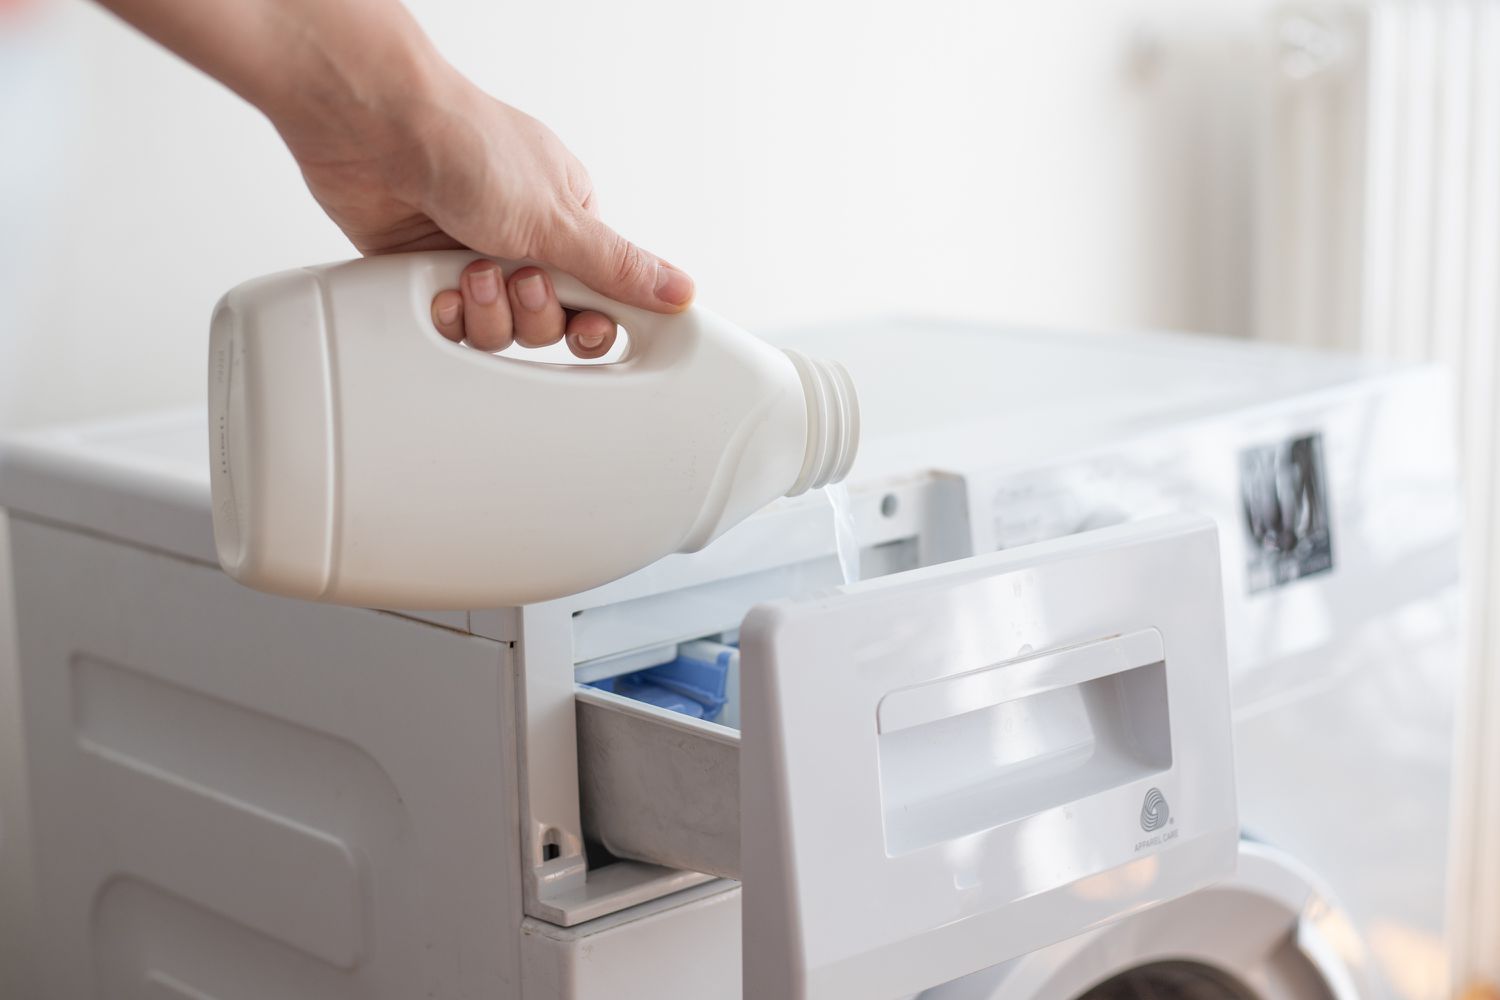 Chlorbleiche in den Waschmaschinenspender geben, um Farbflecken zu entfernen